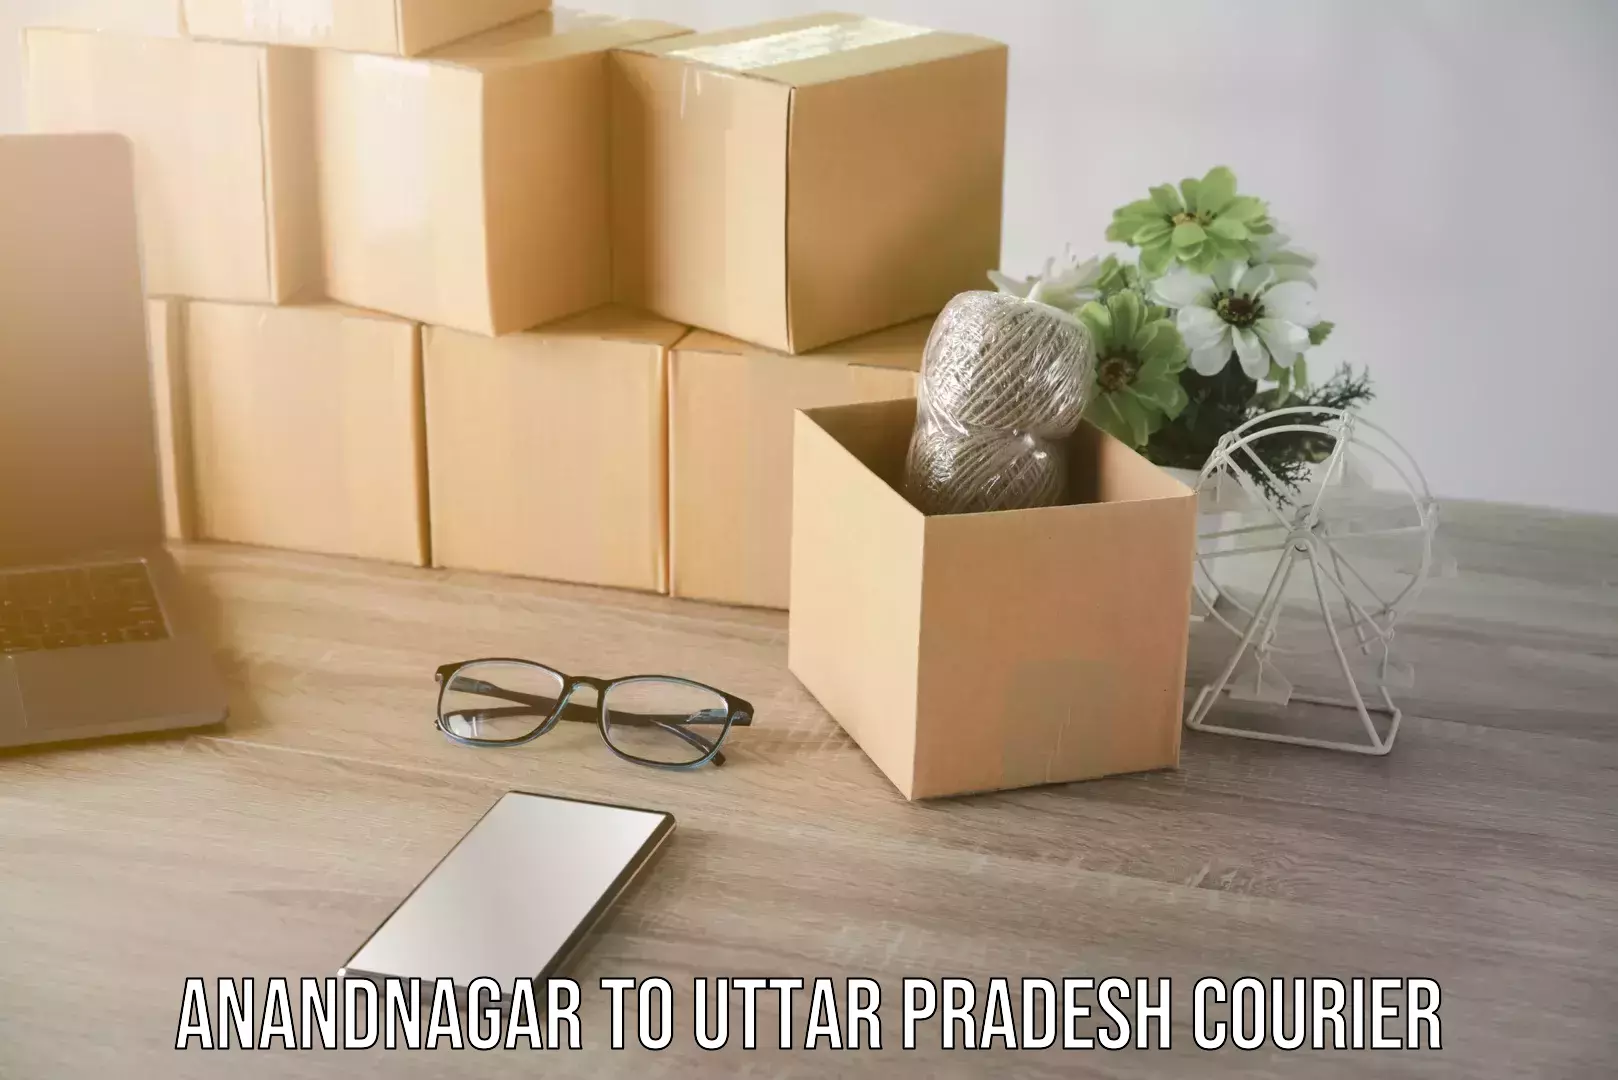 Courier service comparison Anandnagar to Uttar Pradesh